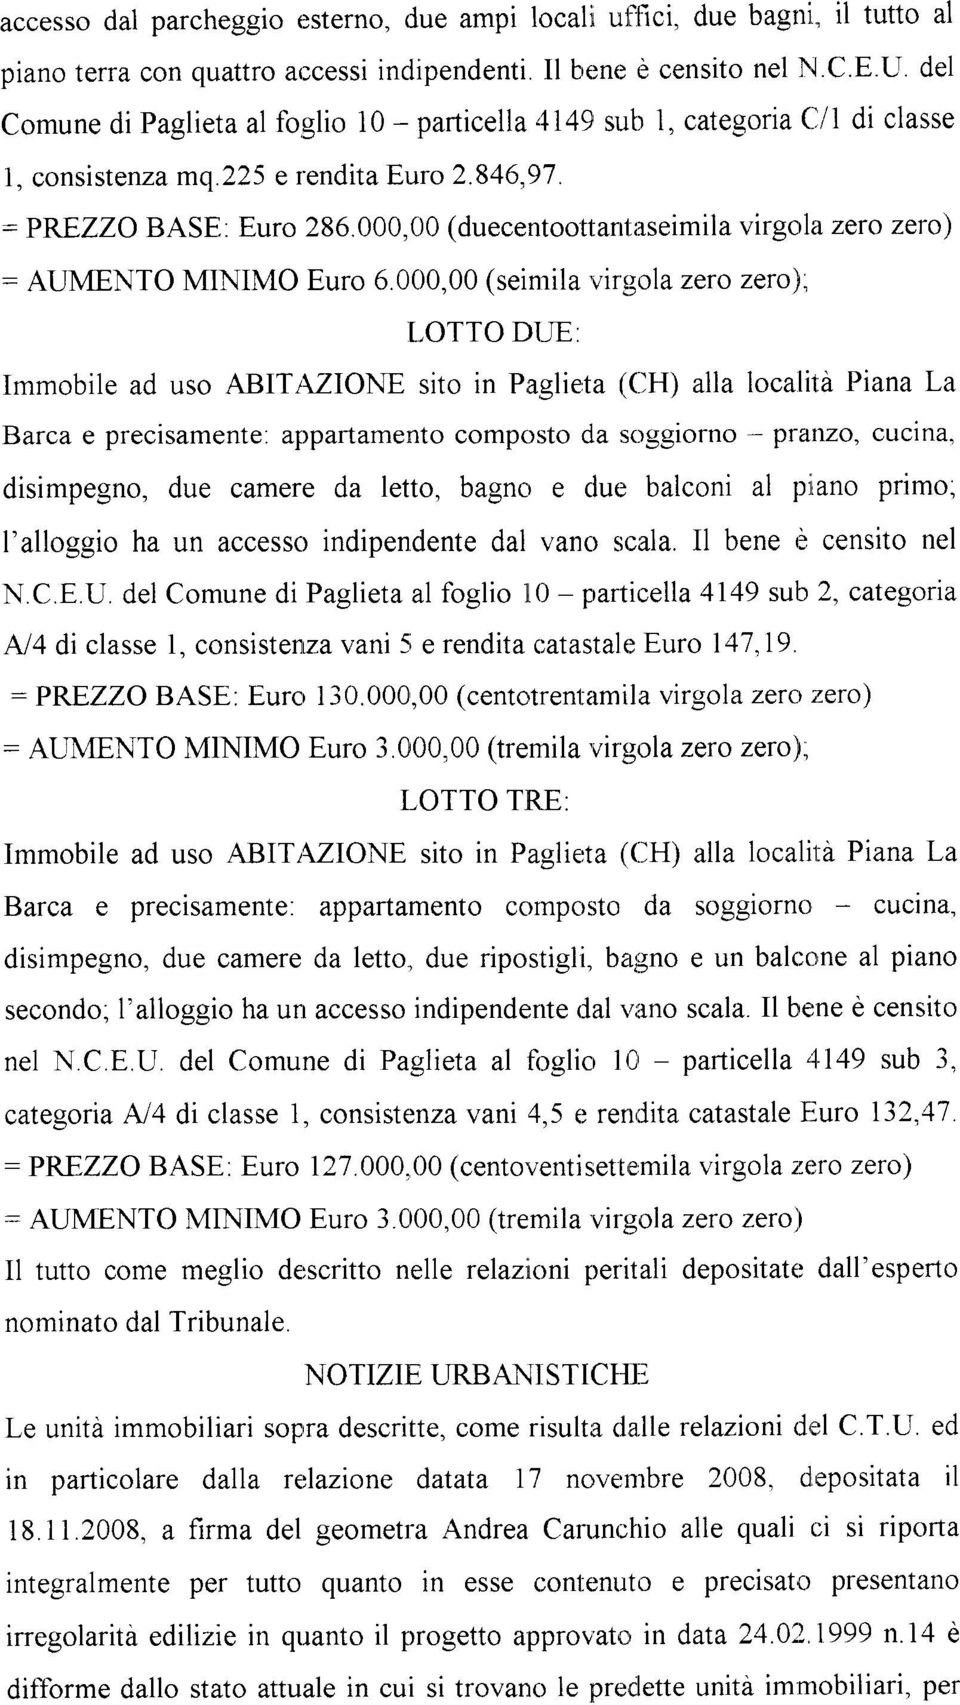 000,00 (seimila vir5;ola zero zero)" LOTTO DI,IE: Immobile ad uso ABIT:VIONE sito in Paglie,ta (CH) alla località Piana La Barca e precisamente.